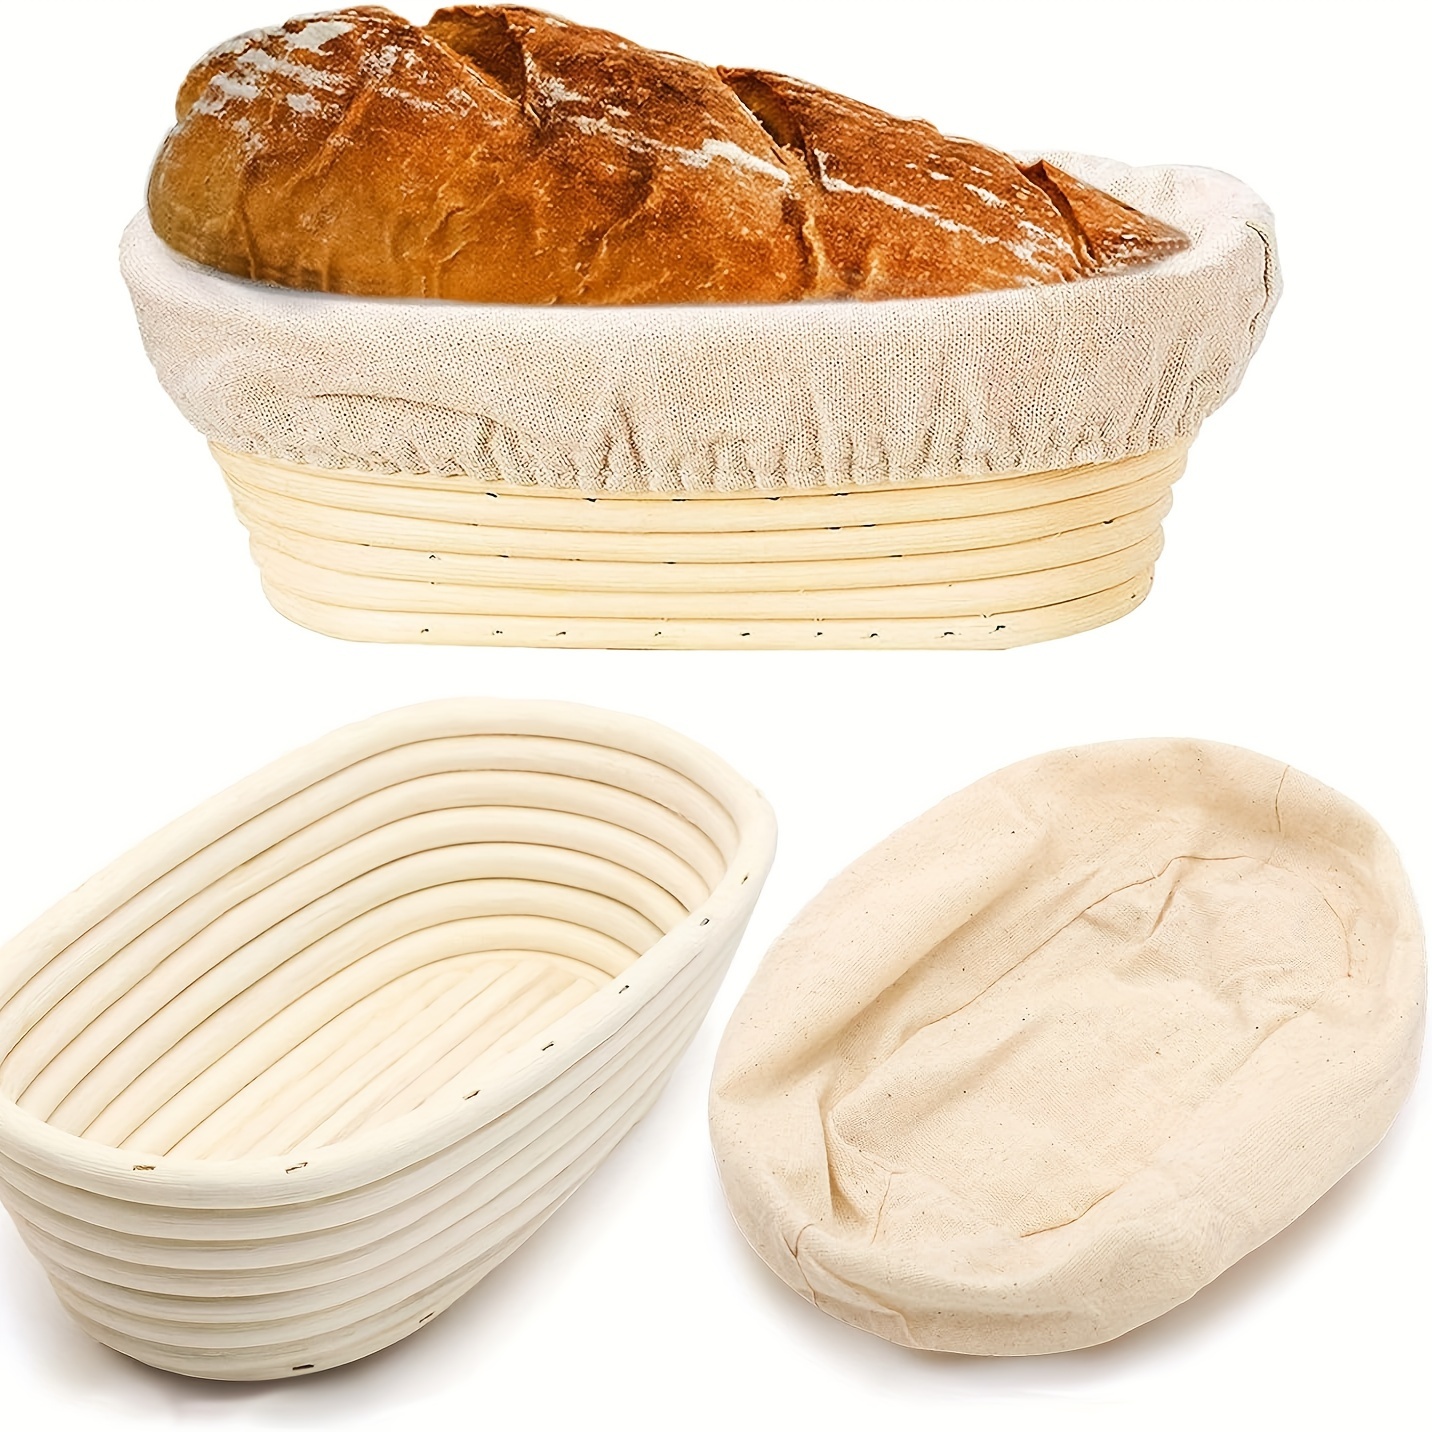 Bread Proofing Basket - Temu